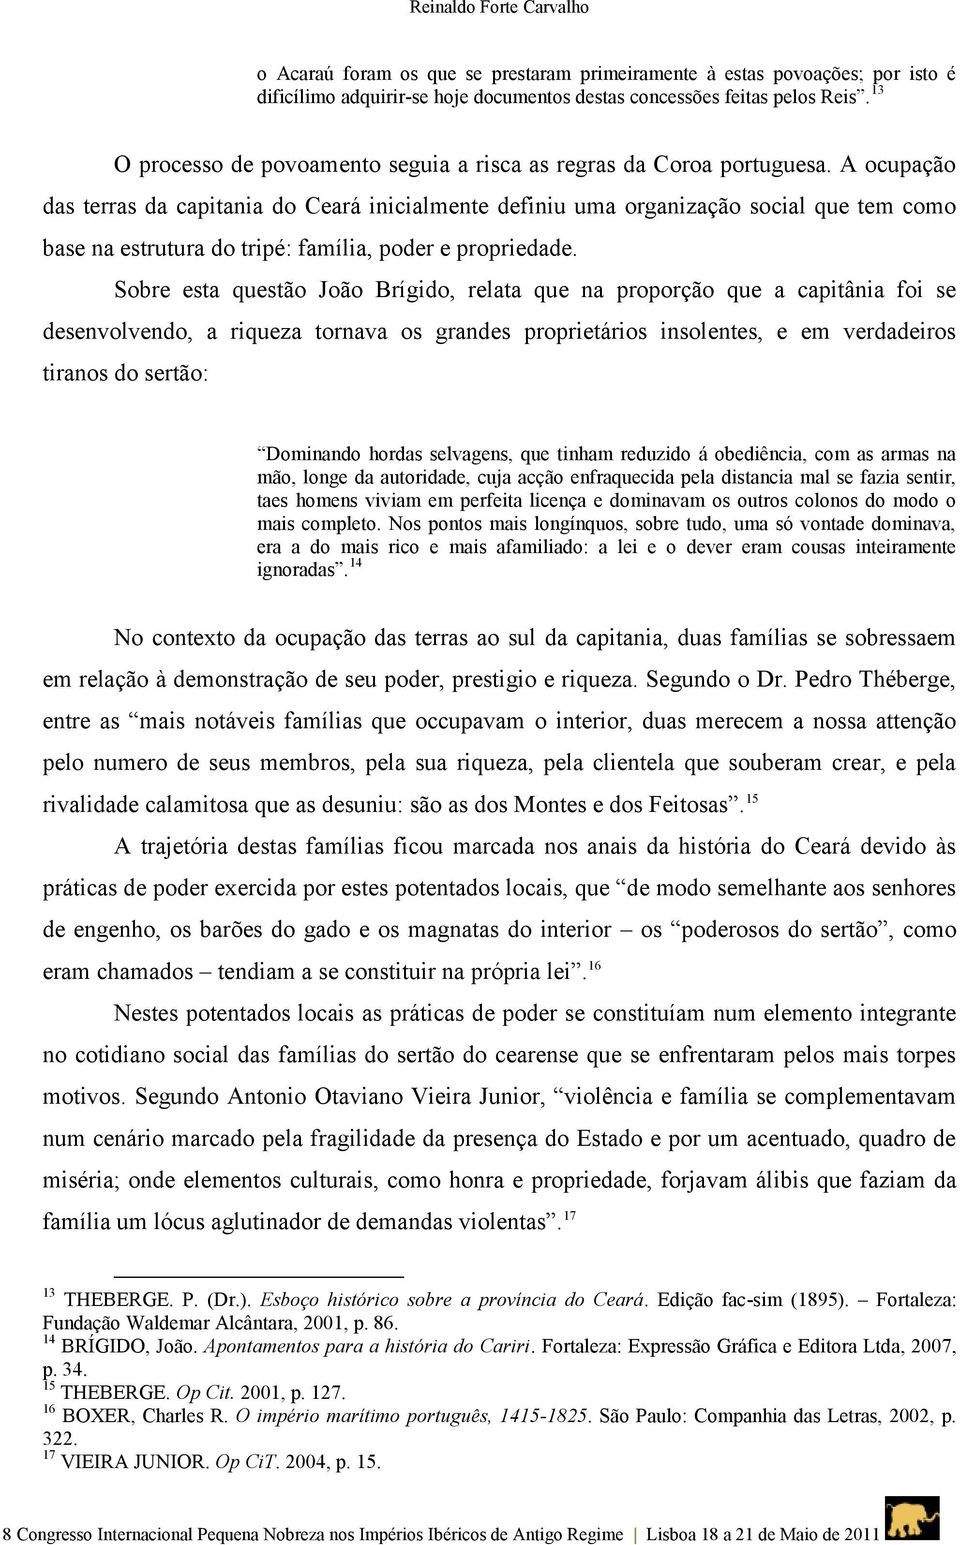 A ocupação das terras da capitania do Ceará inicialmente definiu uma organização social que tem como base na estrutura do tripé: família, poder e propriedade.